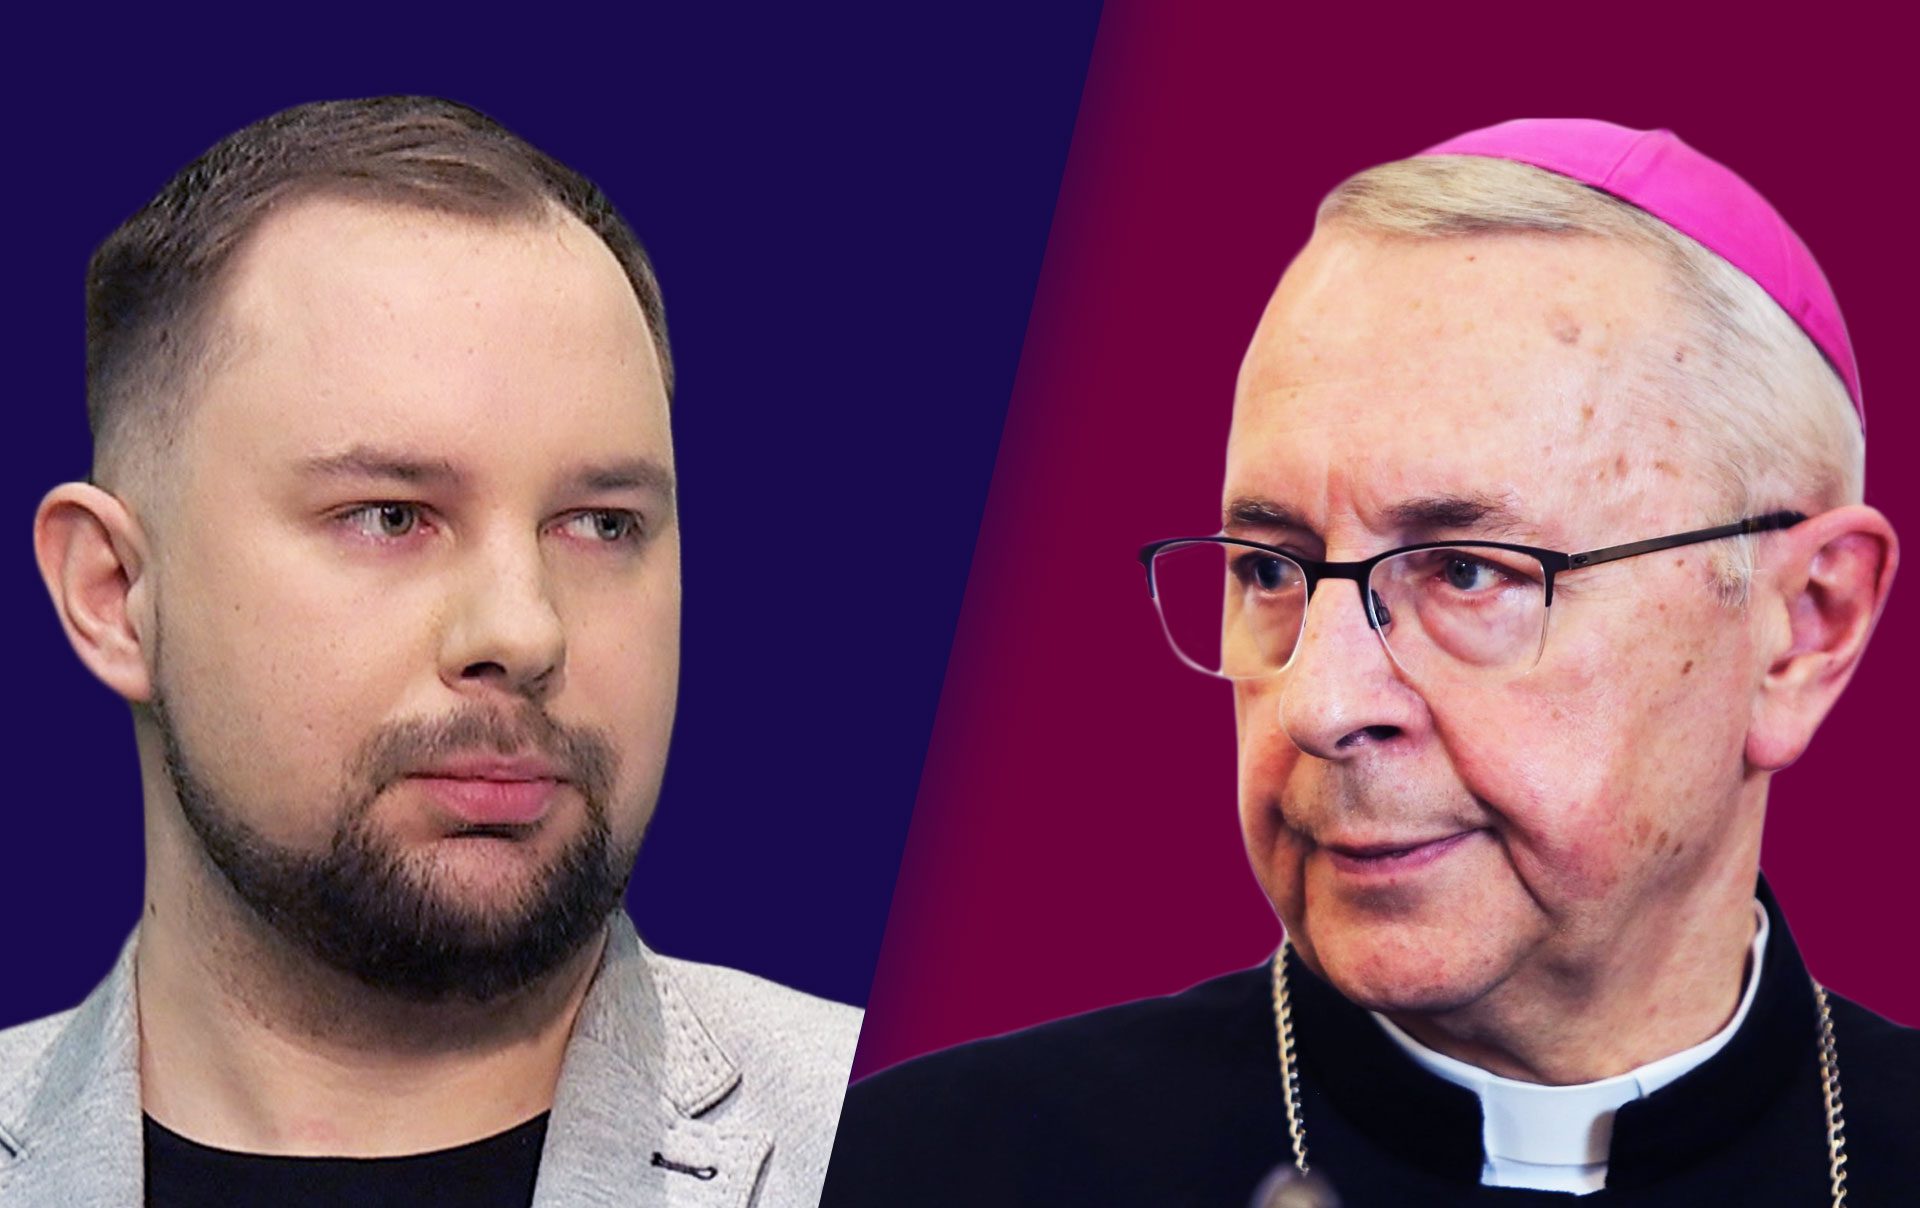 Arcybiskup Gądecki to kłamca! – mówi w IPP TV Mariusz Milewski, pokrzywdzony przez księdza pedofila